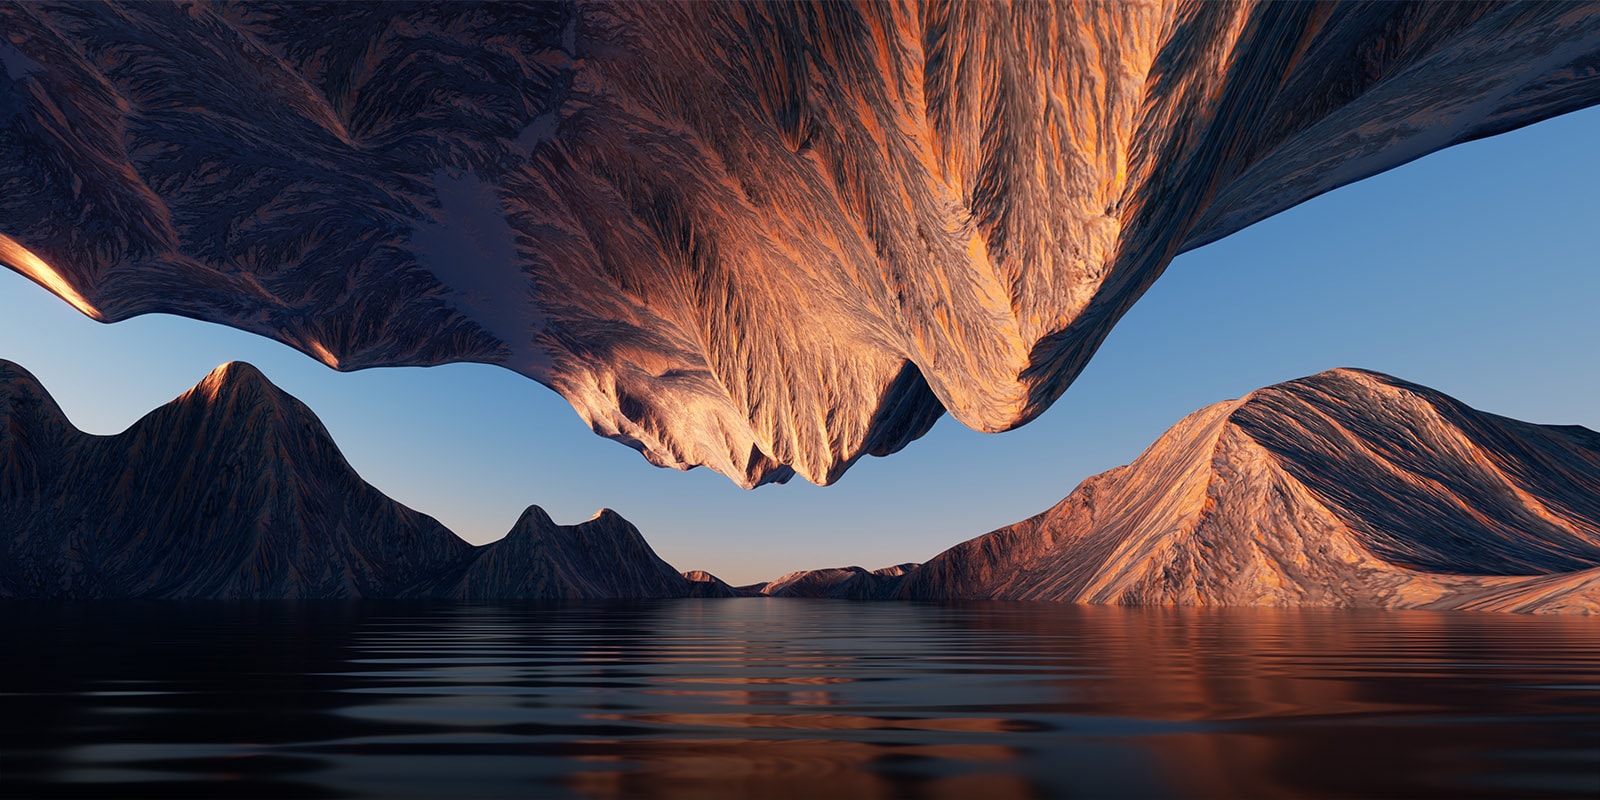 Obrázok prírody so skalnatým pohorím otočený proti sebe zhora a zdola znázorňuje kontrast a detaily.